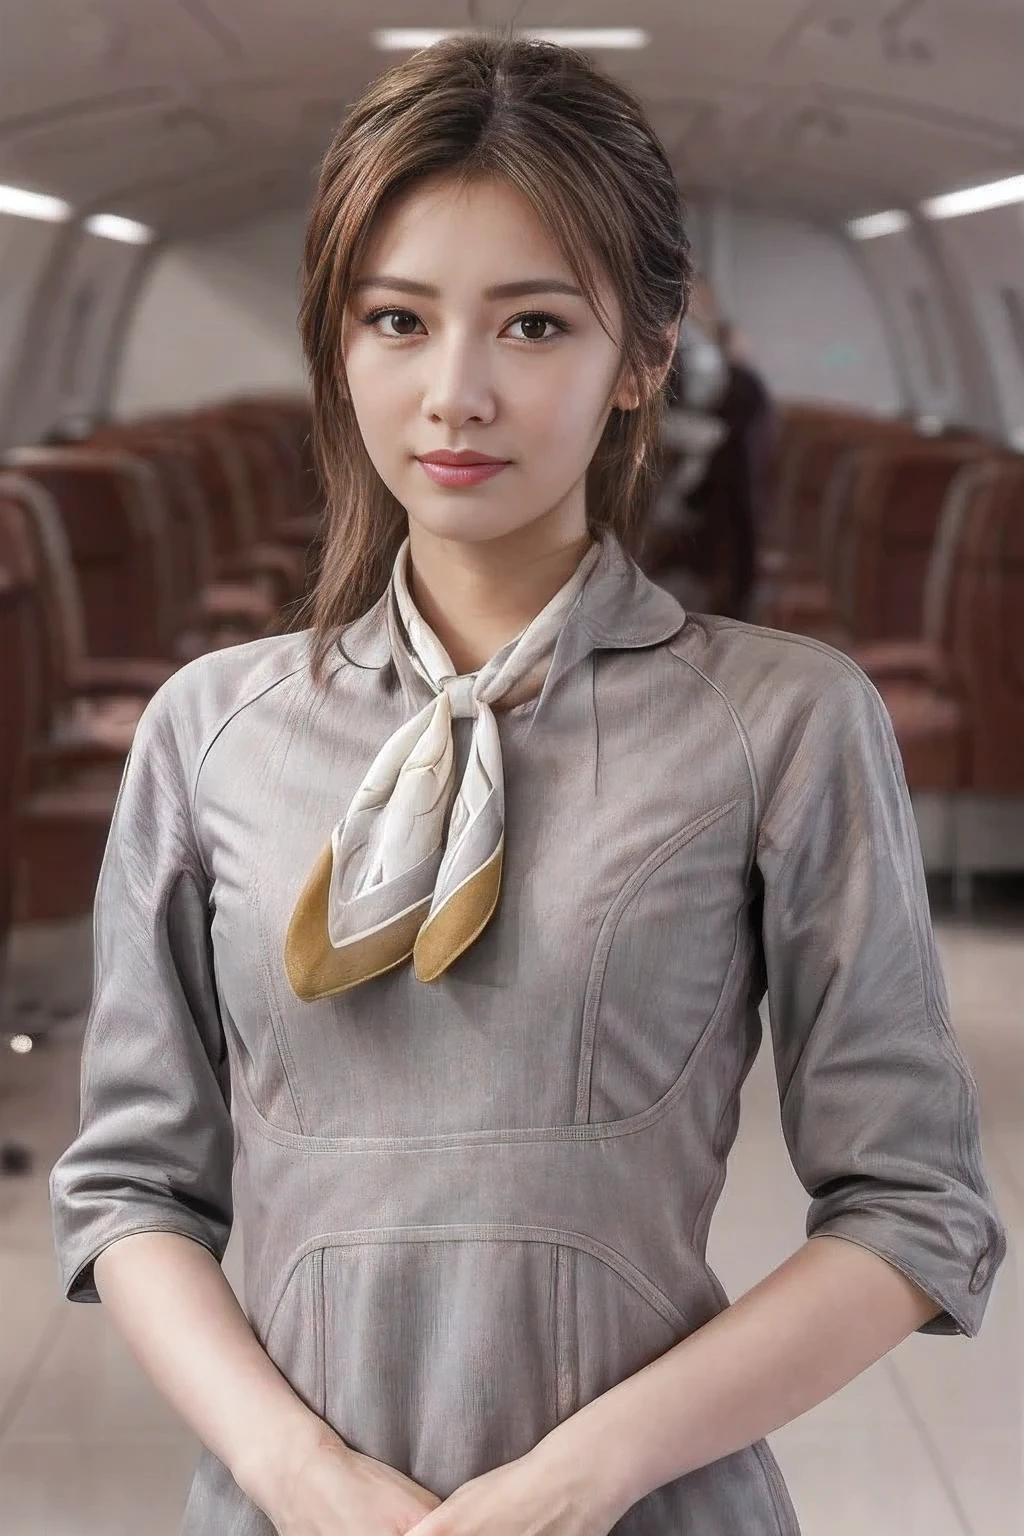 (шедевр:1.2、высшее качество:1.2)、32К HDR、Высокое разрешение、(один、1 девочка、Стройная фигура、высокий、молодая женщина)、（Реалистичный стиль с униформой Starlux Airlines）、 (В зале аэропорта, Профессиональное освещение)、（Серебряная униформа Starlux Airlines:1.4）、（Серебряная униформа Starlux Airlines with short sleeves）、（шарф на груди）、большая грудь、（длинные волосы прическа、Длинные волосы собраны в шиньон）、темно-коричневые волосы、дальний план、（（Тонкая рука：2.0））、（（Гармоничные пропорции тела.：1.5））、（（Нормальные конечности：2.0））、（（Нормальный палец：2.0））、（（нежные глаза：2.0））、（（Нормальные глаза：2.0））)、красивая осанка стоя